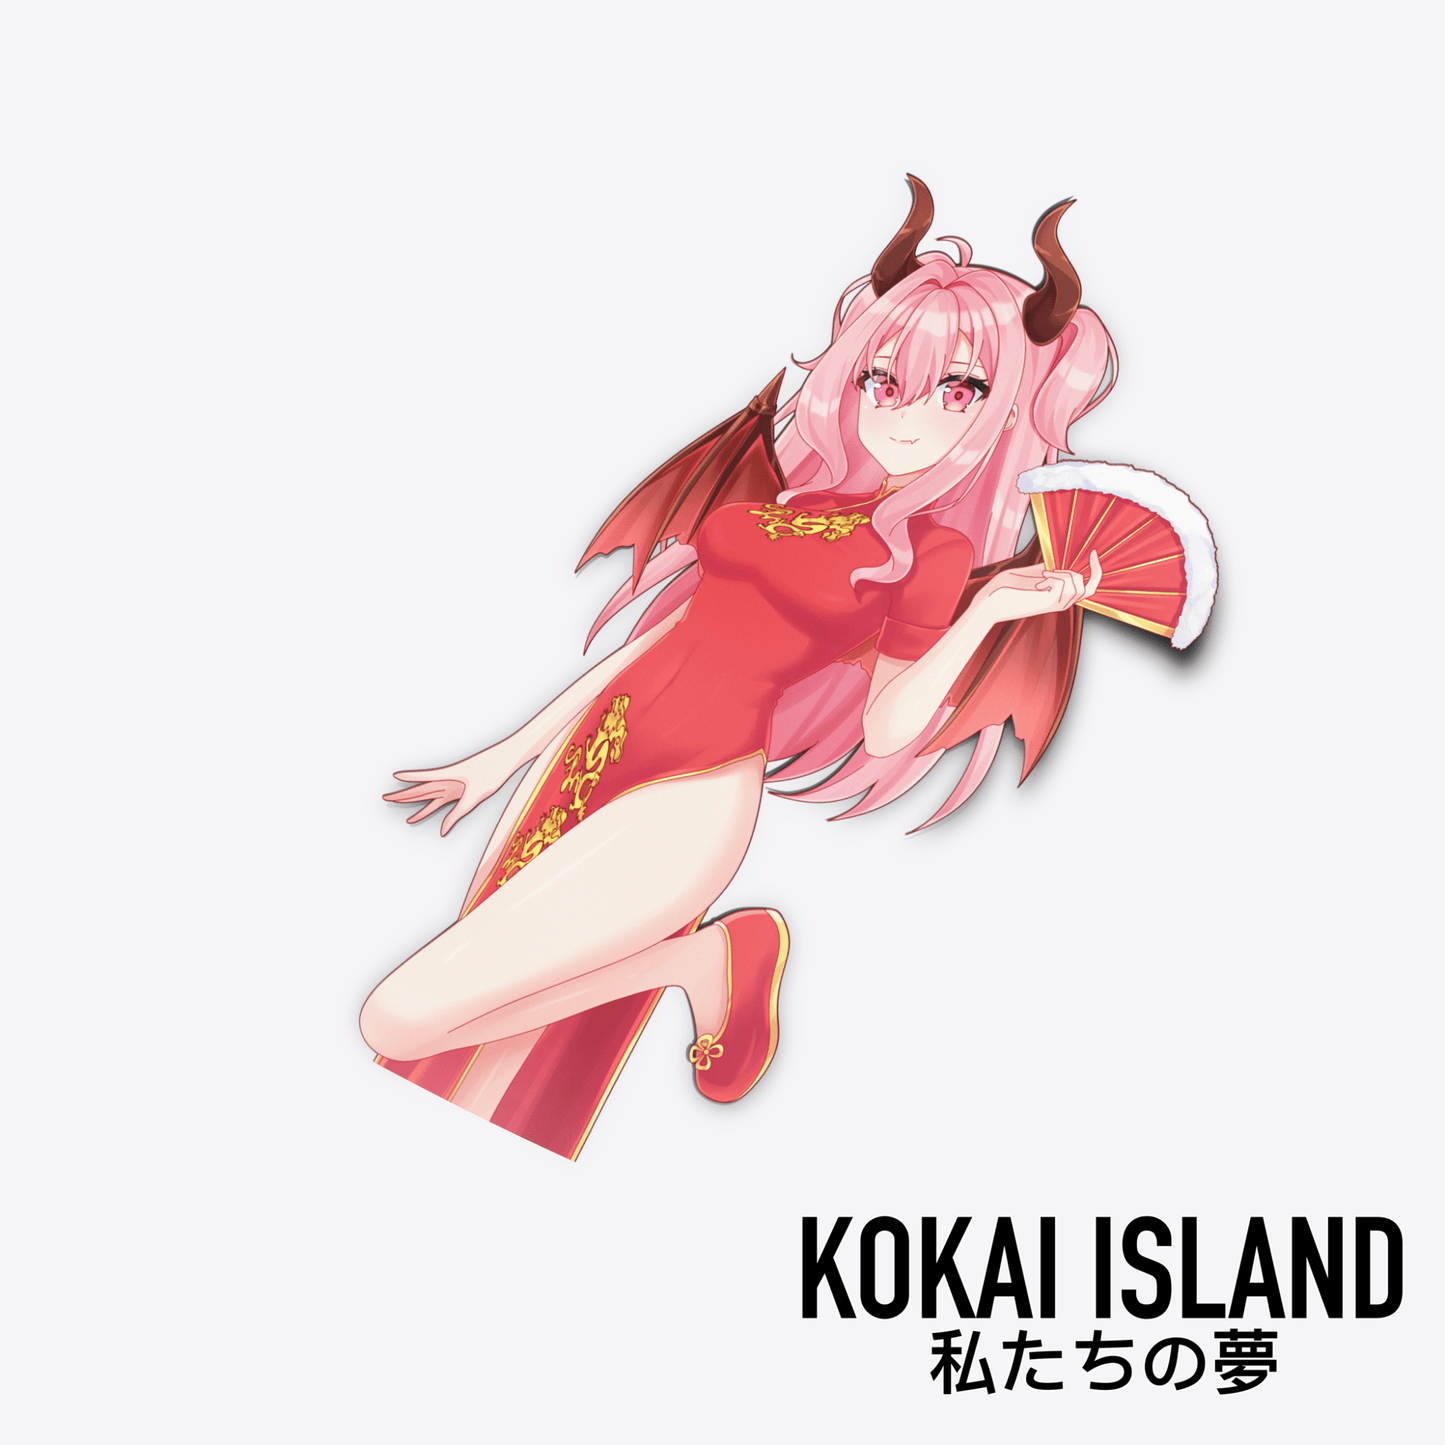 Dragon Kai DecalDecalKokai Island